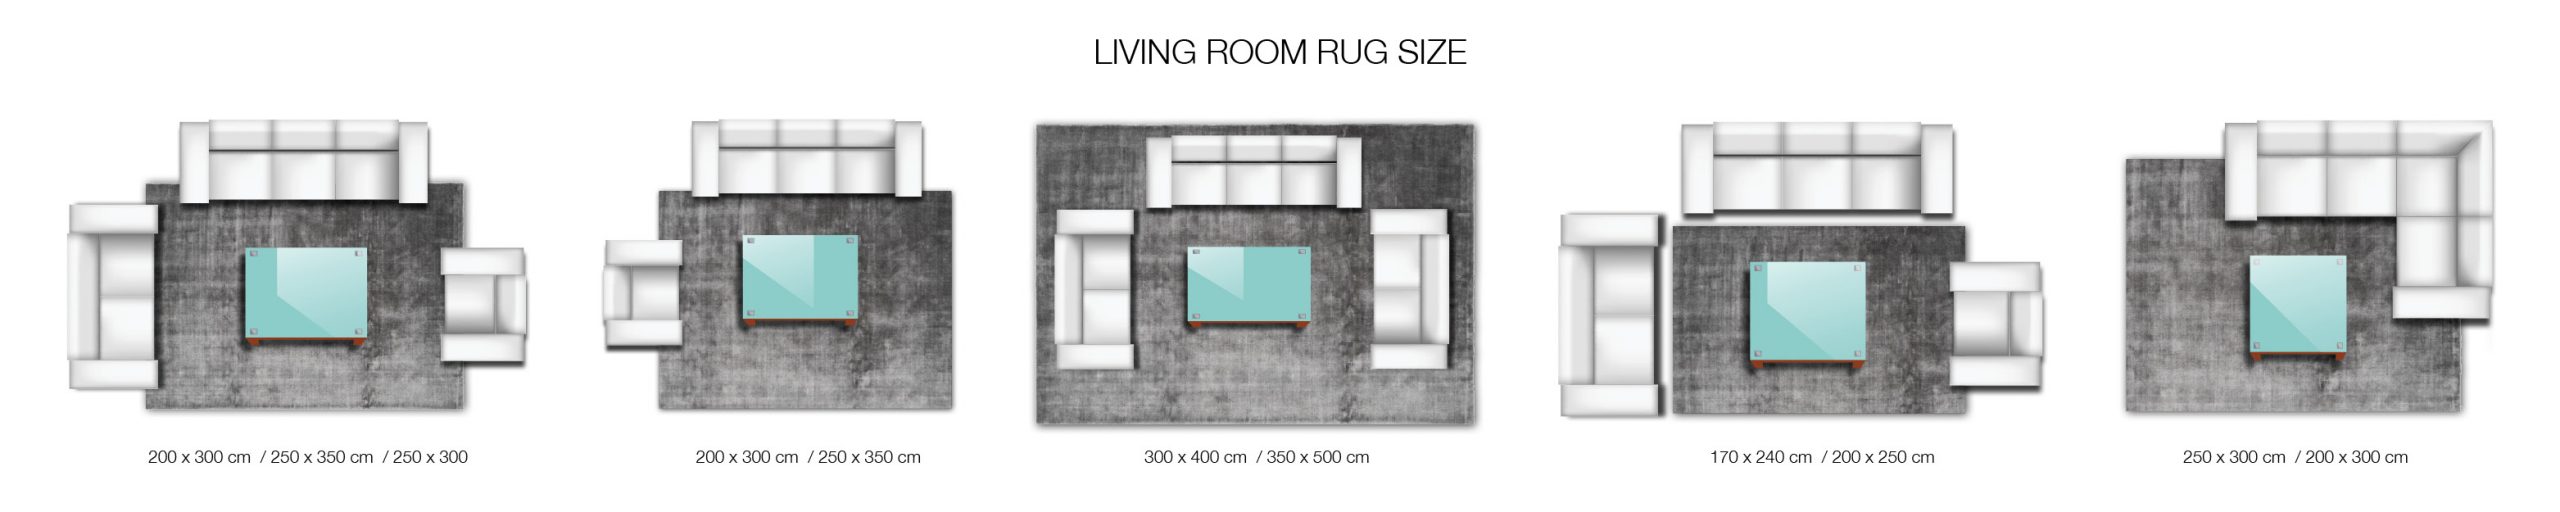 Rugsize-Livingroom